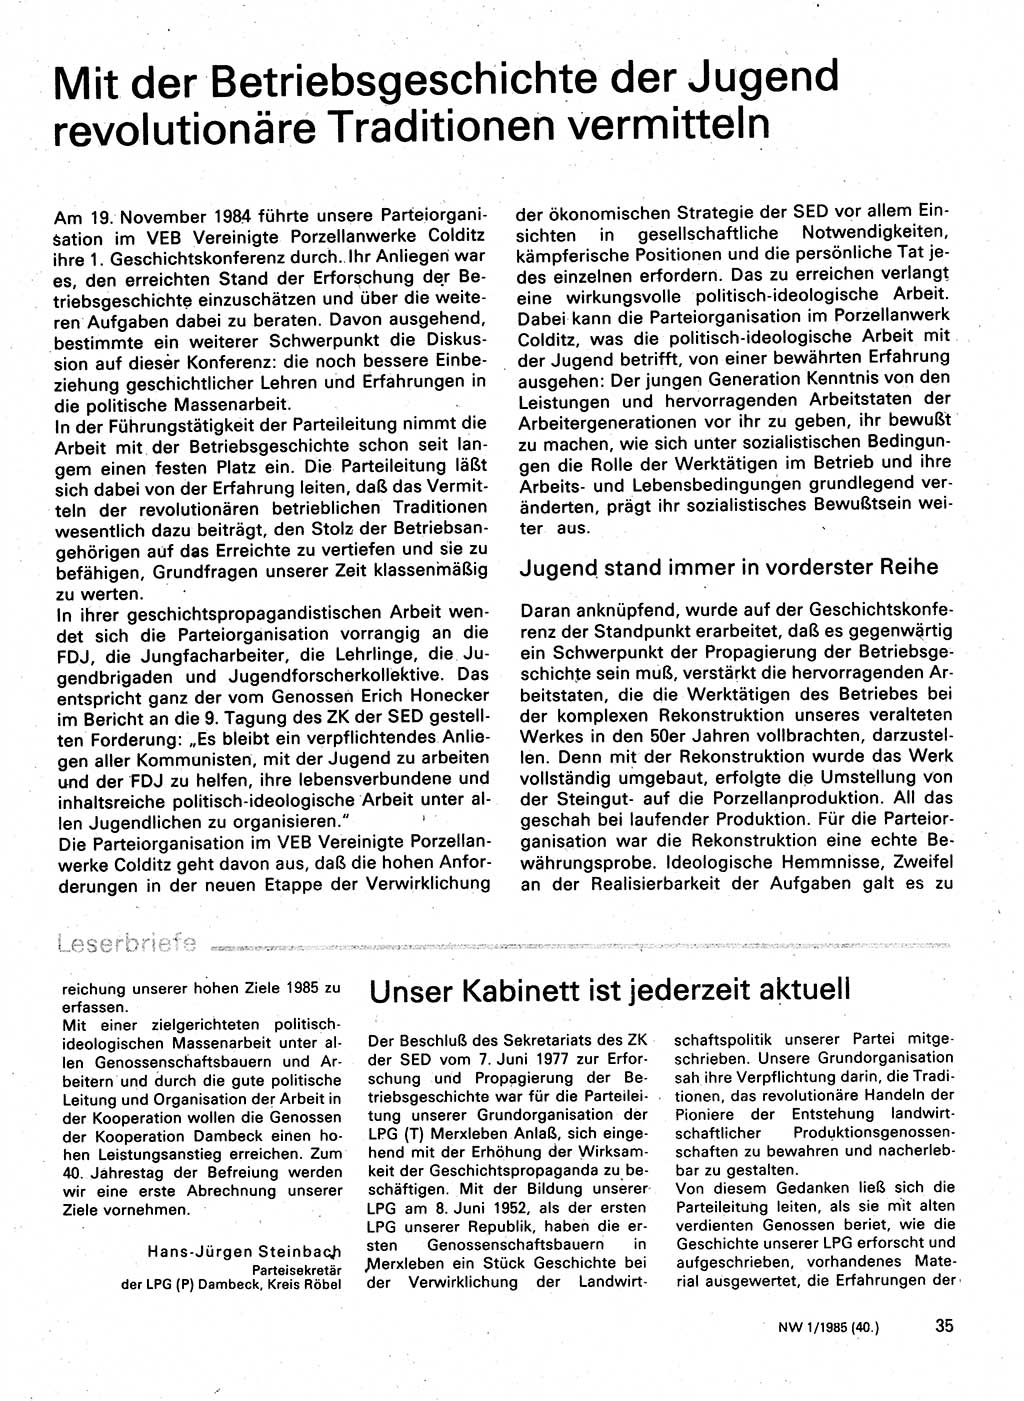 Neuer Weg (NW), Organ des Zentralkomitees (ZK) der SED (Sozialistische Einheitspartei Deutschlands) für Fragen des Parteilebens, 40. Jahrgang [Deutsche Demokratische Republik (DDR)] 1985, Seite 35 (NW ZK SED DDR 1985, S. 35)